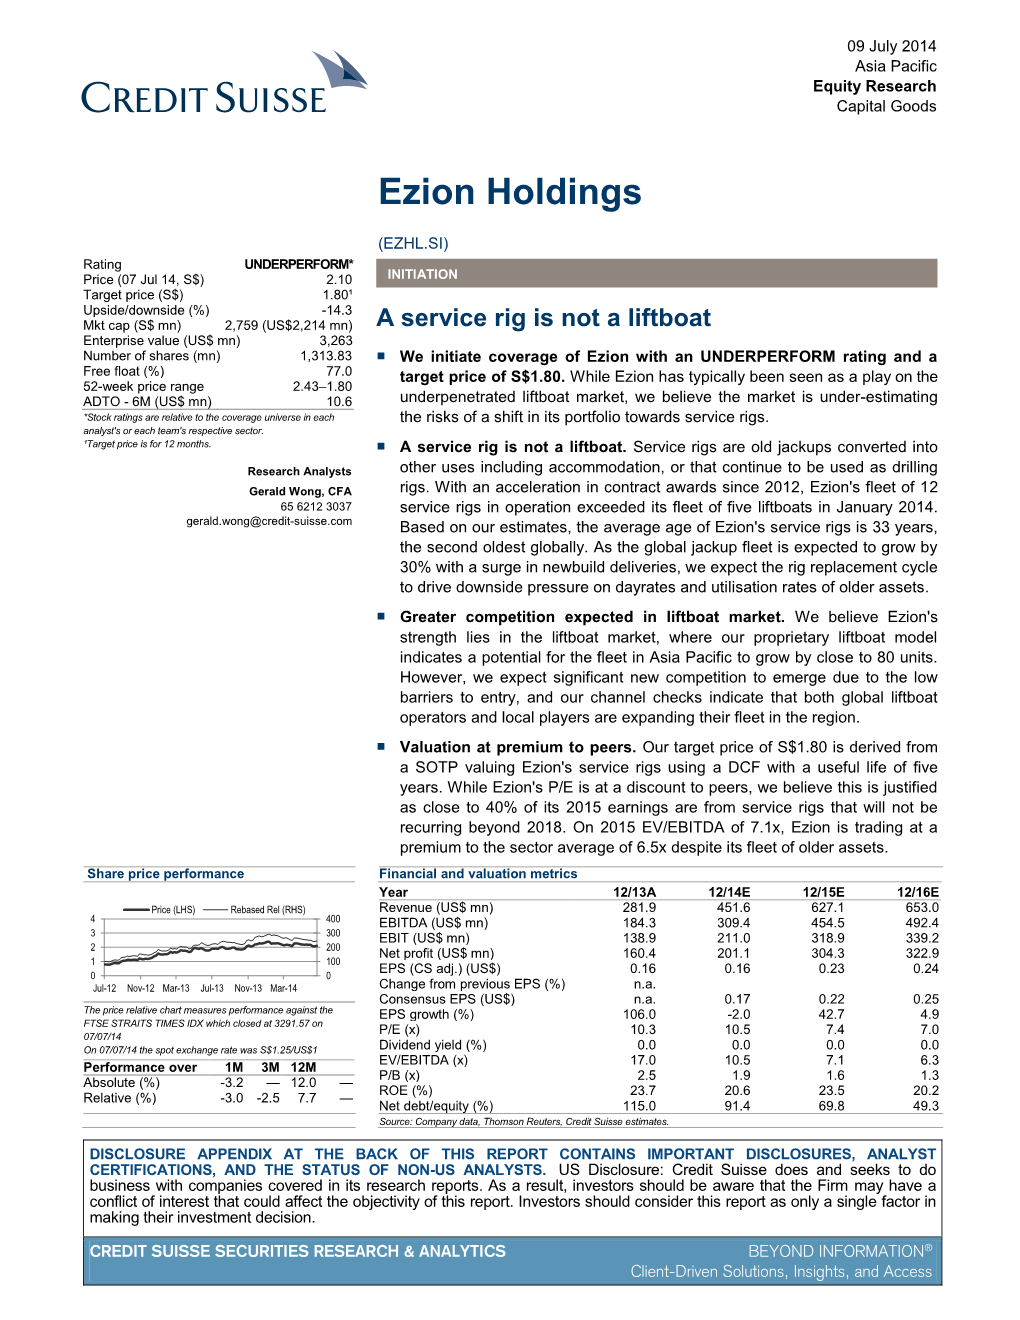 Ezion Holdings